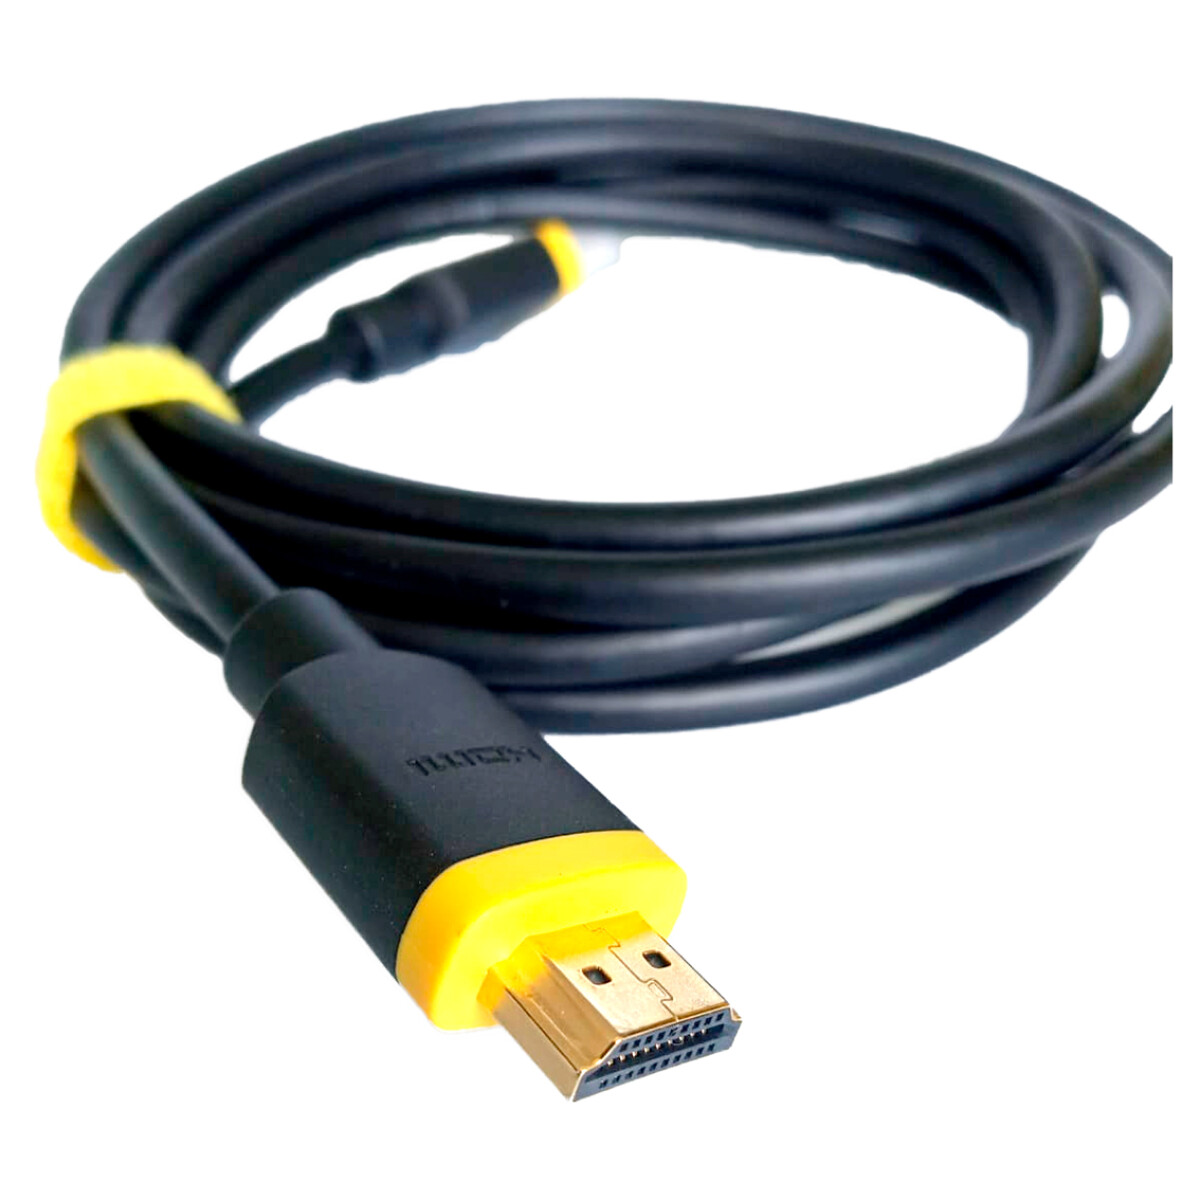 Cable Rasch Thonet & Vander HDMI 8K 60fps 4K 120fps 3 metros - Cable Rasch Thonet & Vander Hdmi 8k 60fps 4k 120fps 3 Metros 